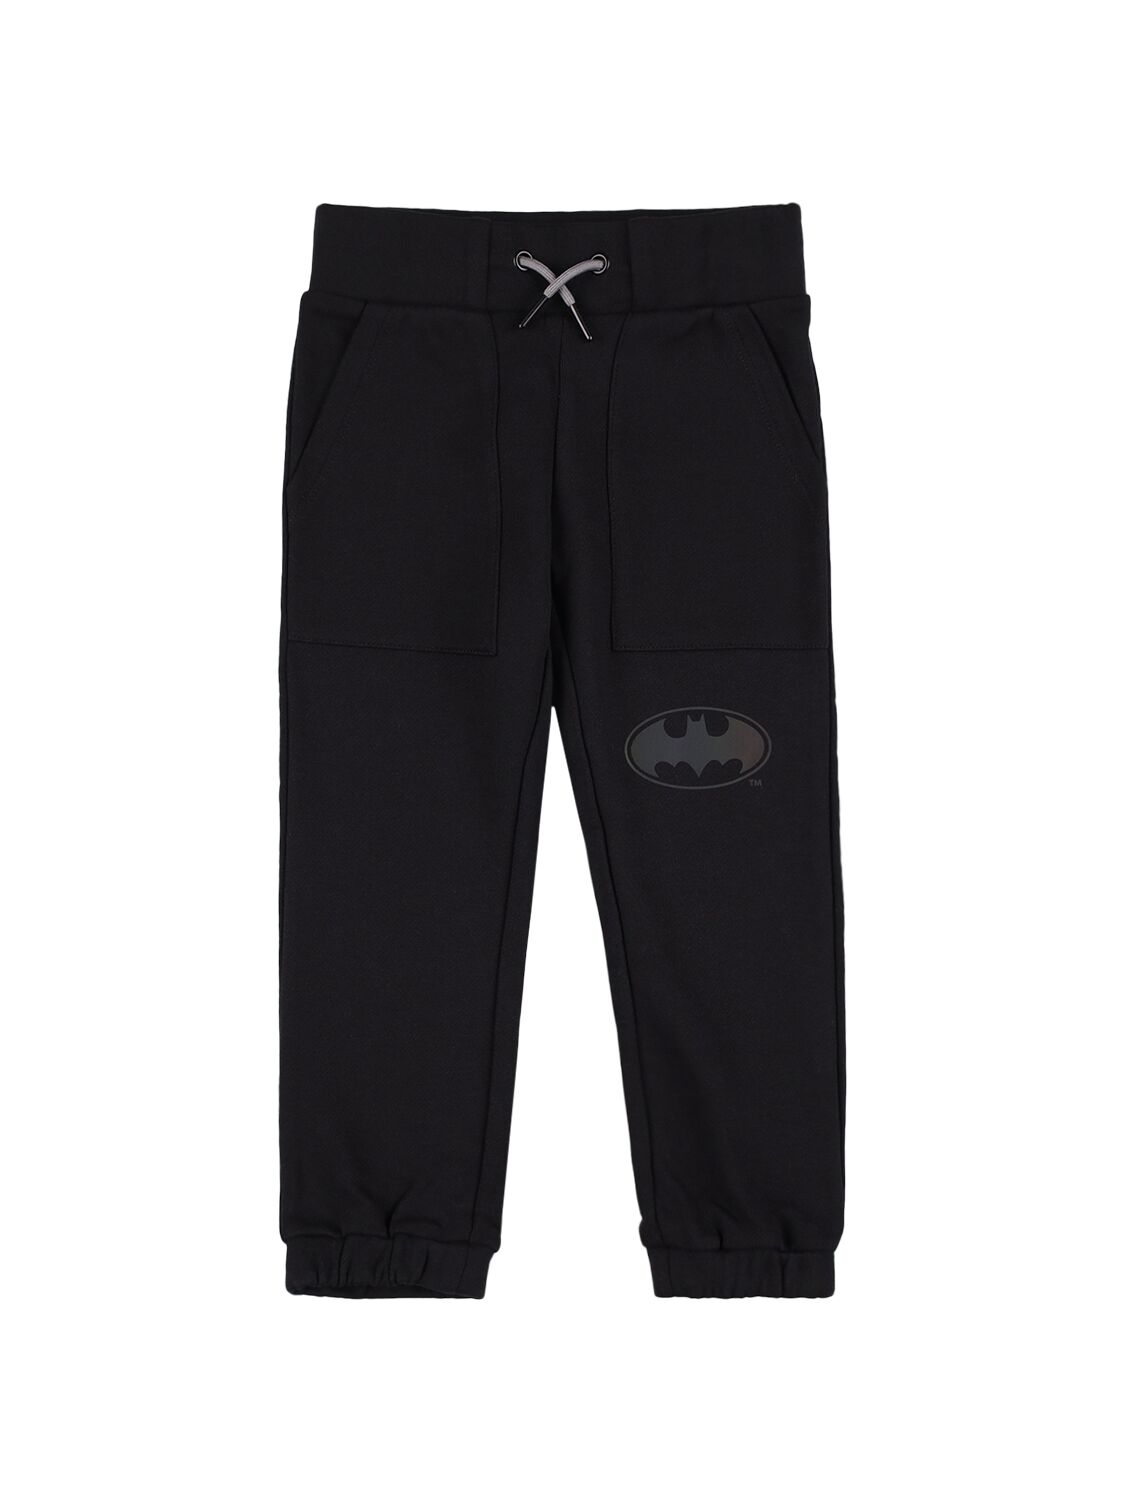 Image of Cotton Sweatpants W/ Batman Patch